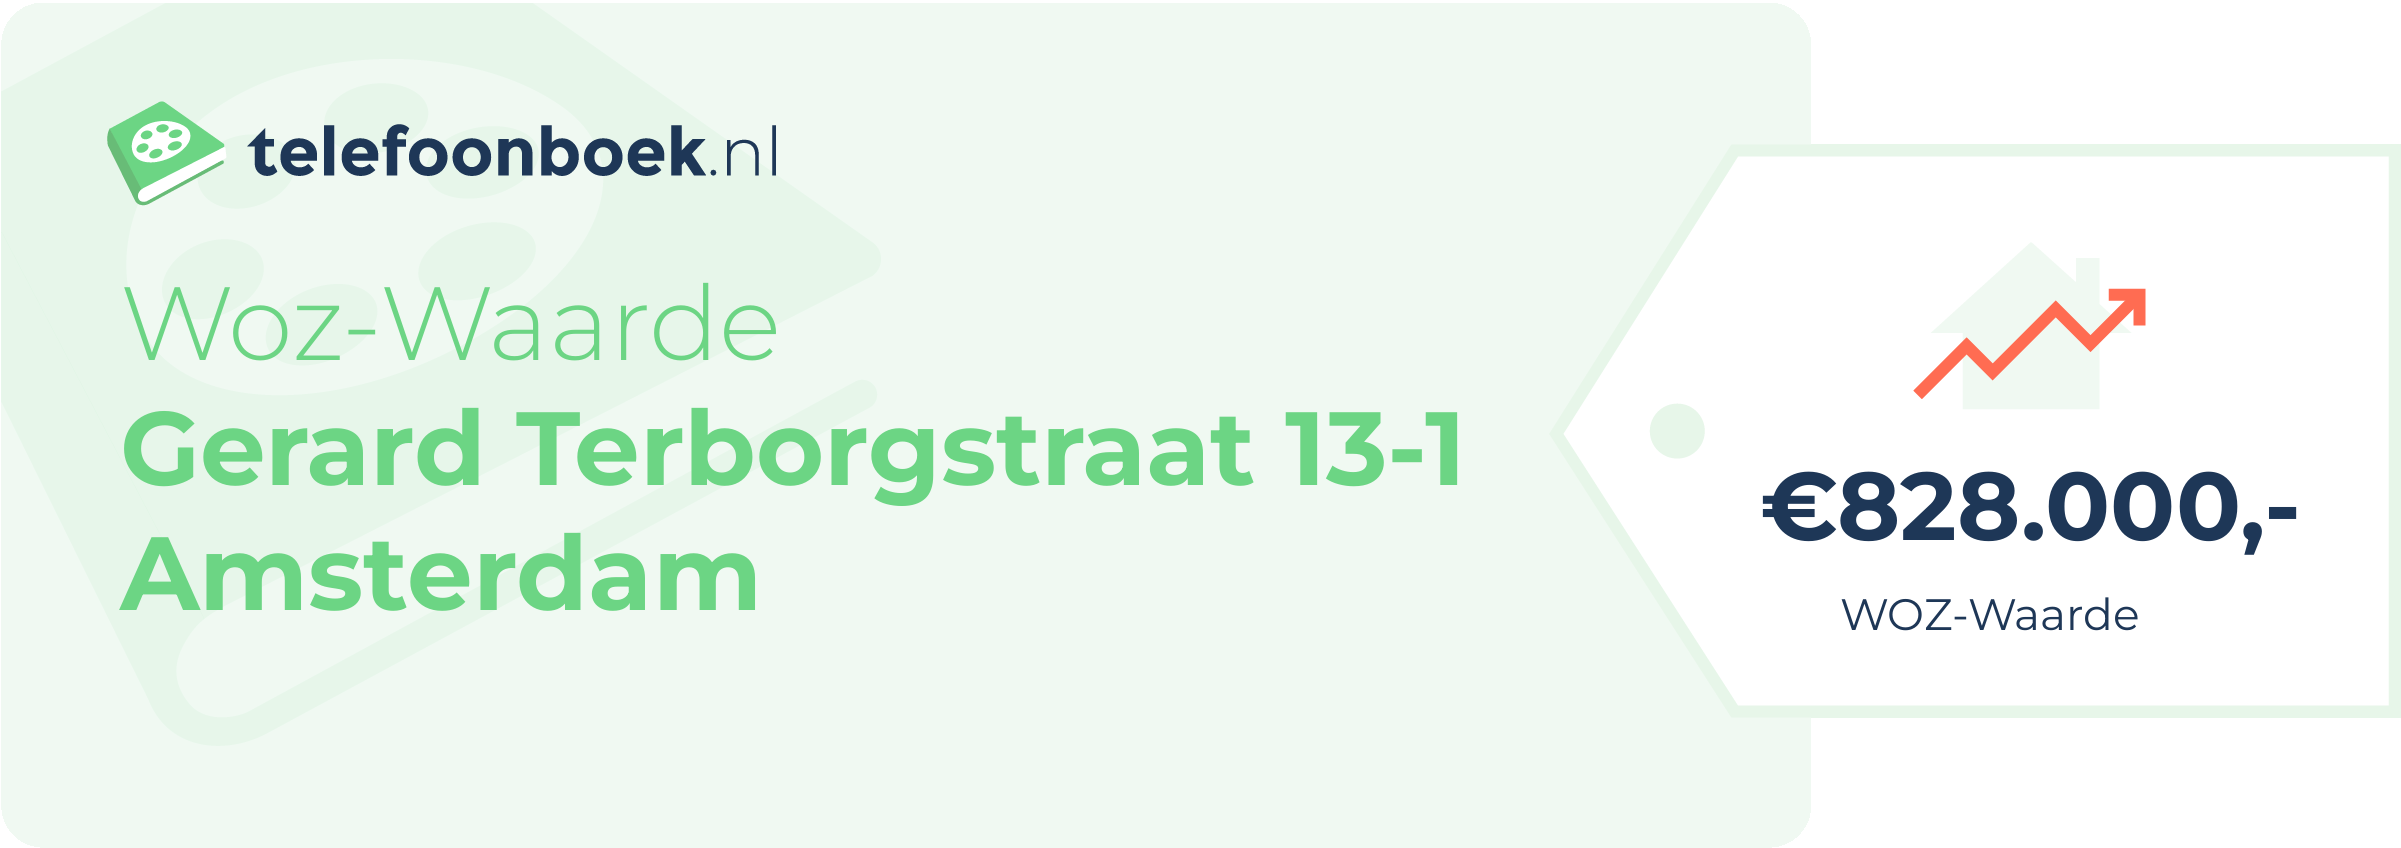 WOZ-waarde Gerard Terborgstraat 13-1 Amsterdam